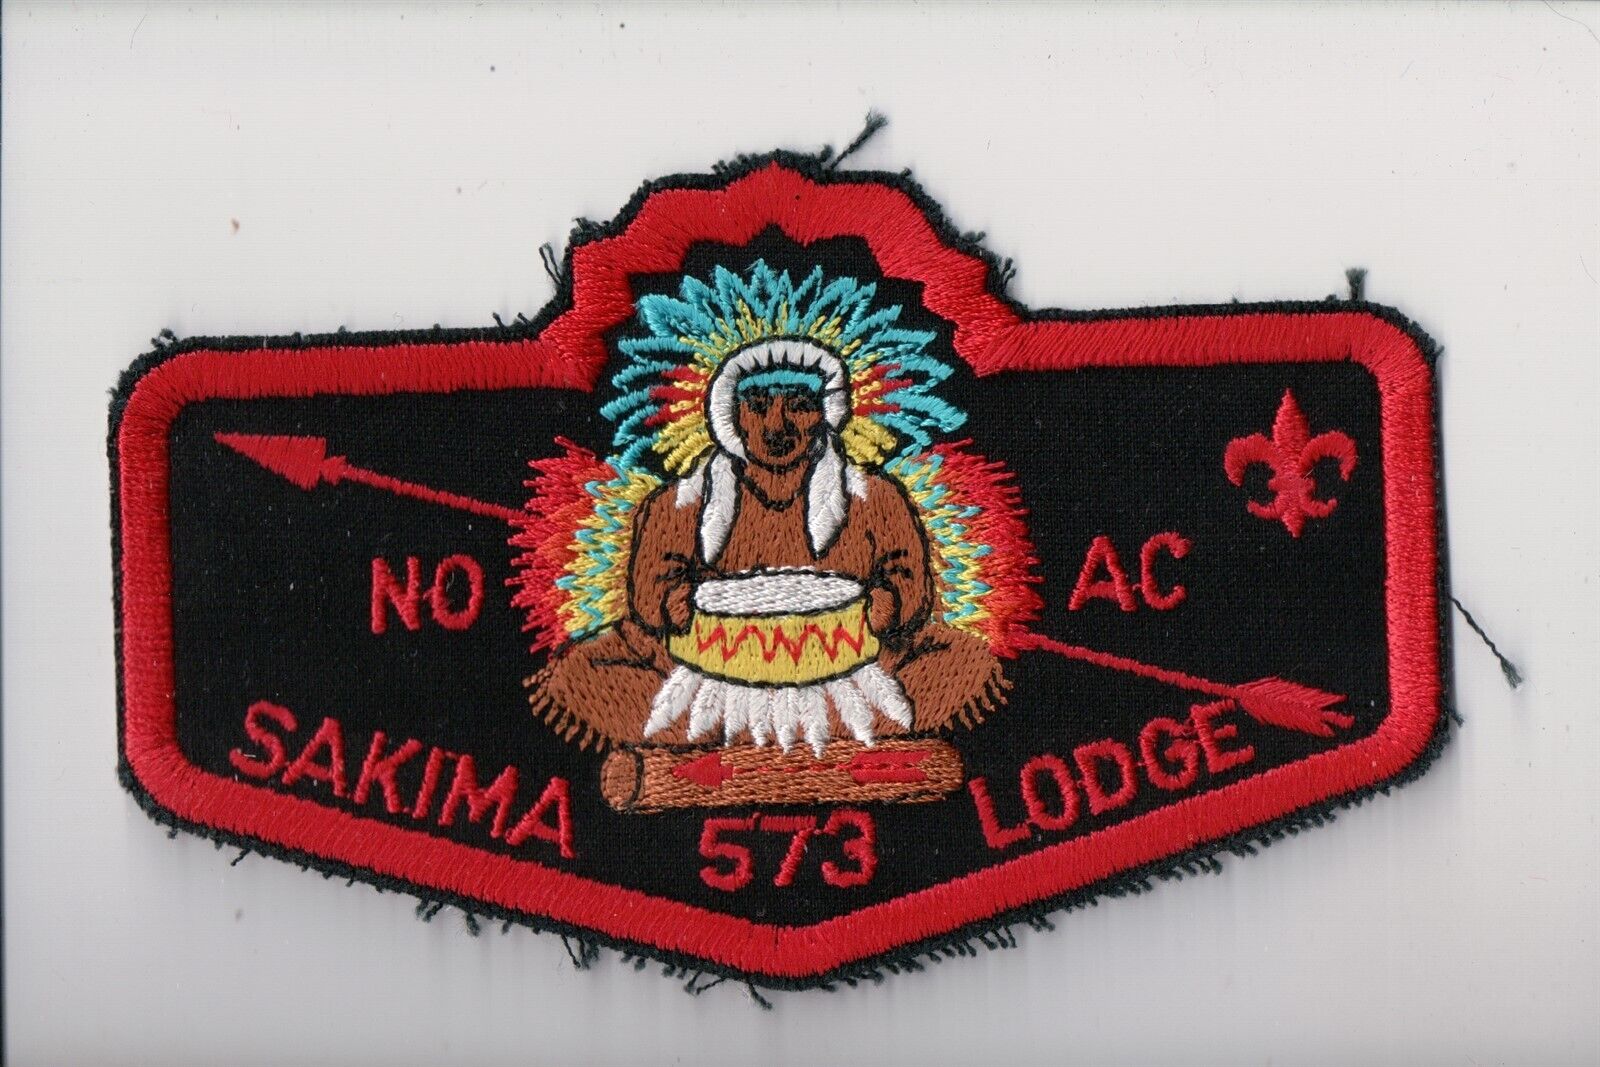 Lodge 573 Sakima NOAC OA flap (WW) (I)